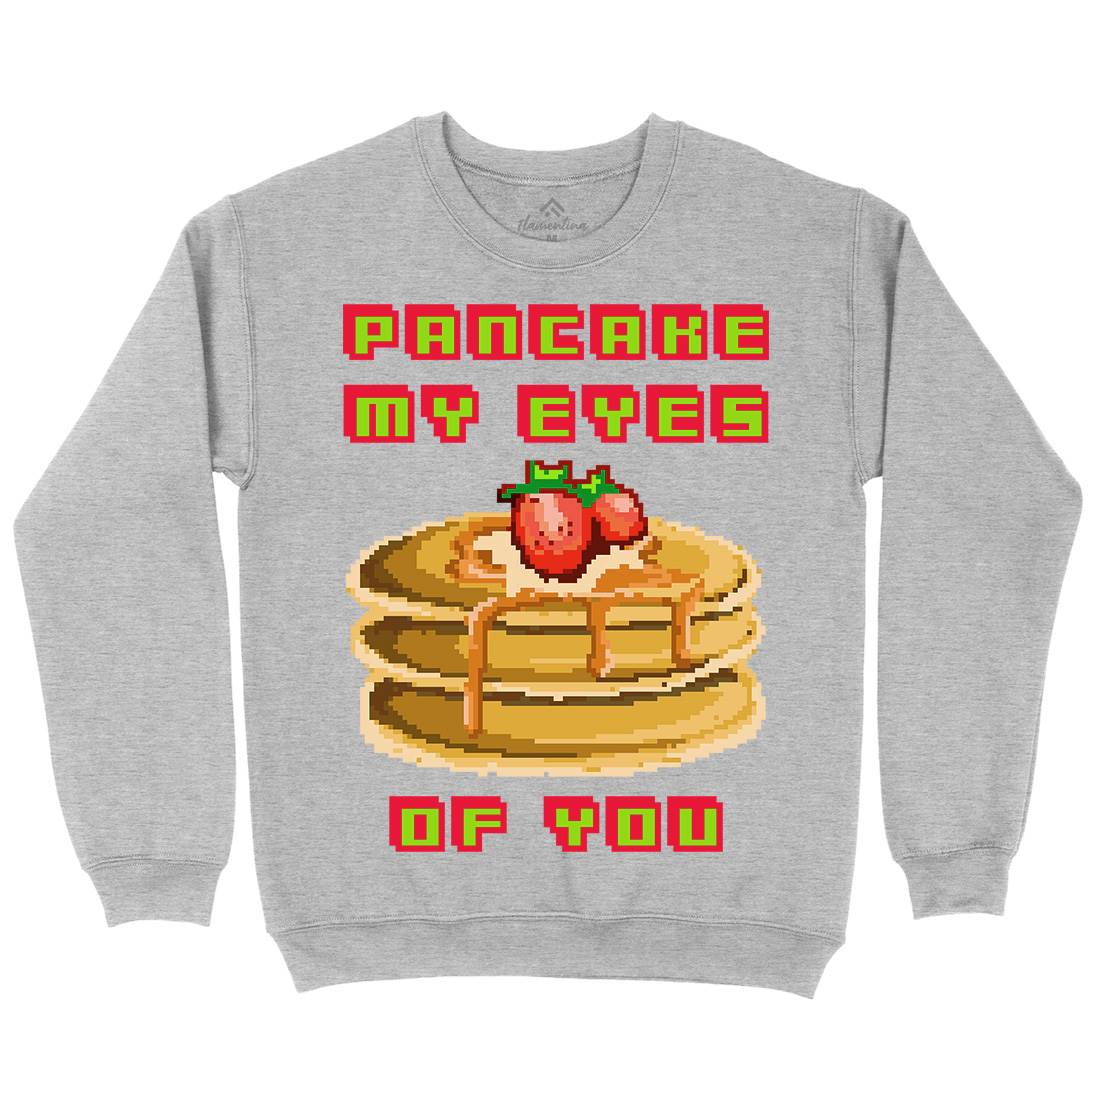 Pancake My Eyes Kids Crew Neck Sweatshirt Food B944